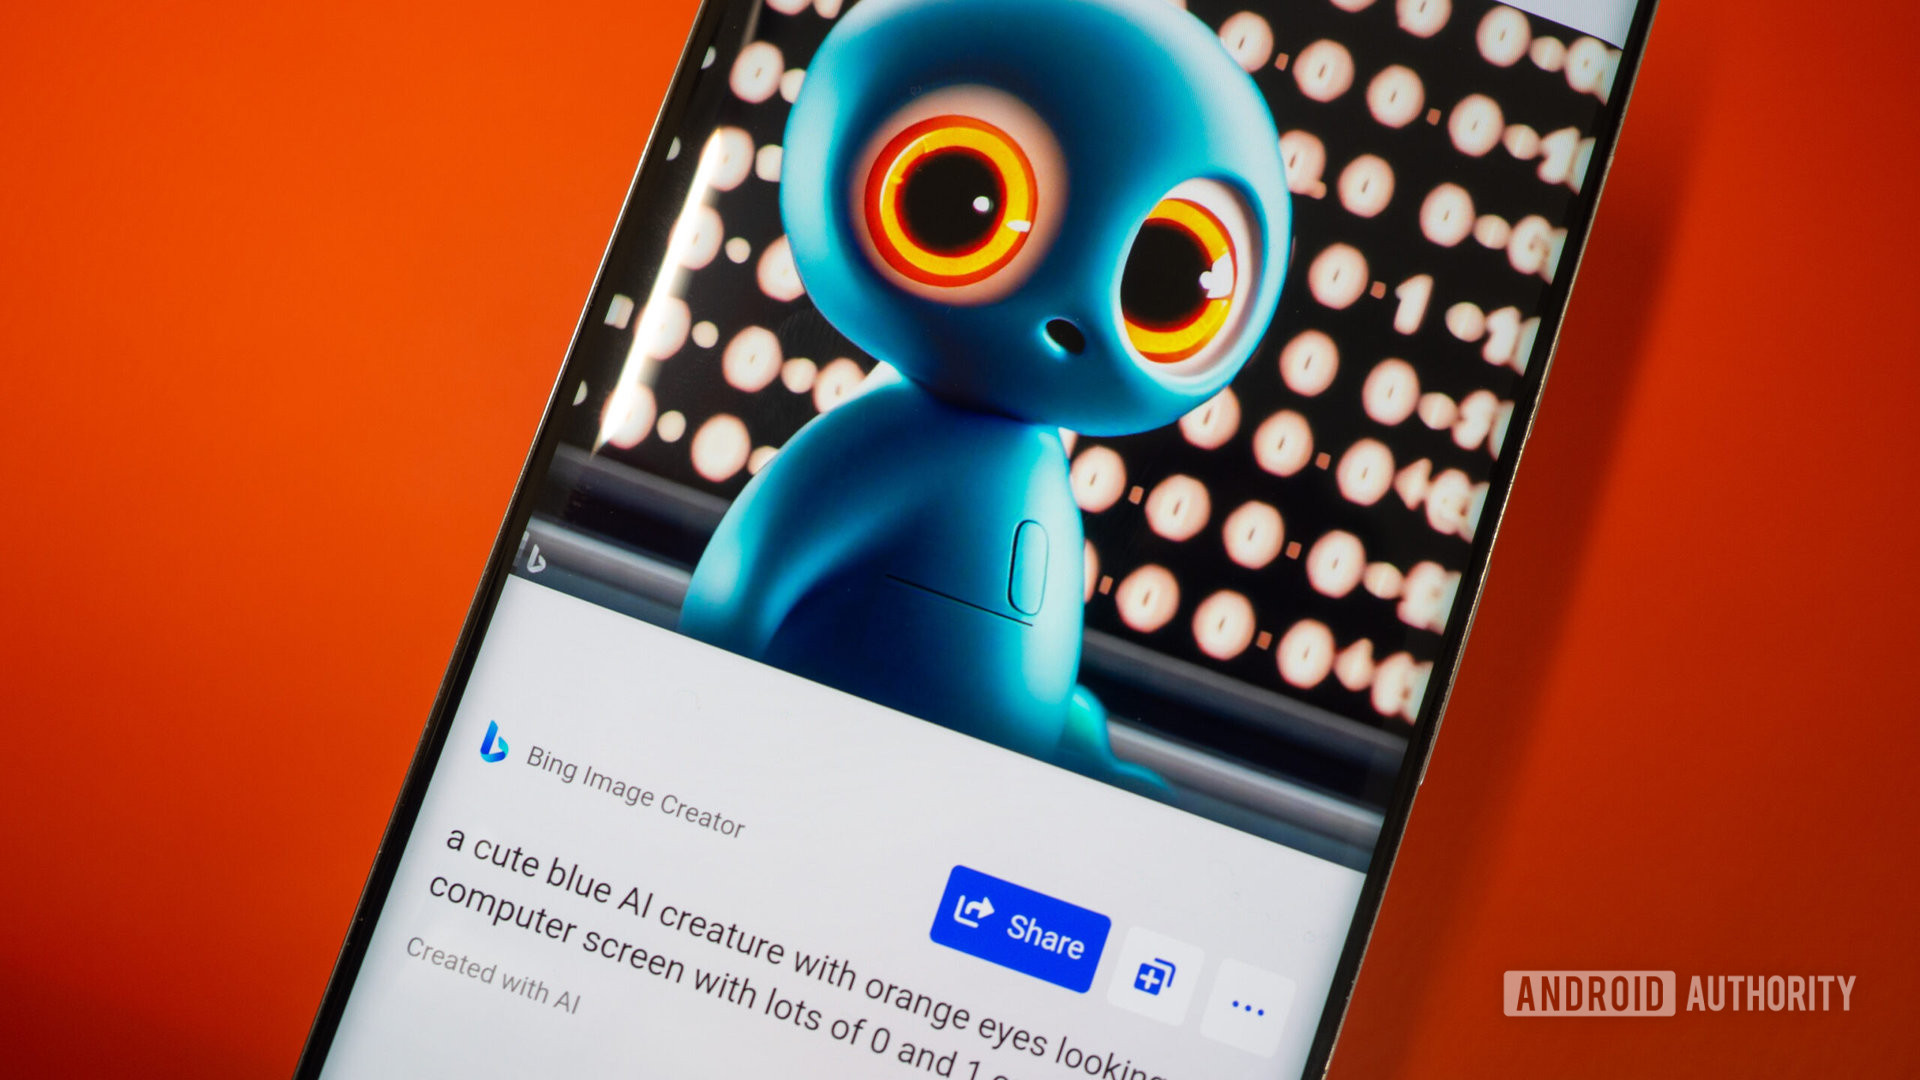 Creador de imágenes de Bing en un teléfono que muestra una imagen de una criatura de IA azul con ojos naranjas frente a una pantalla con ceros y unos